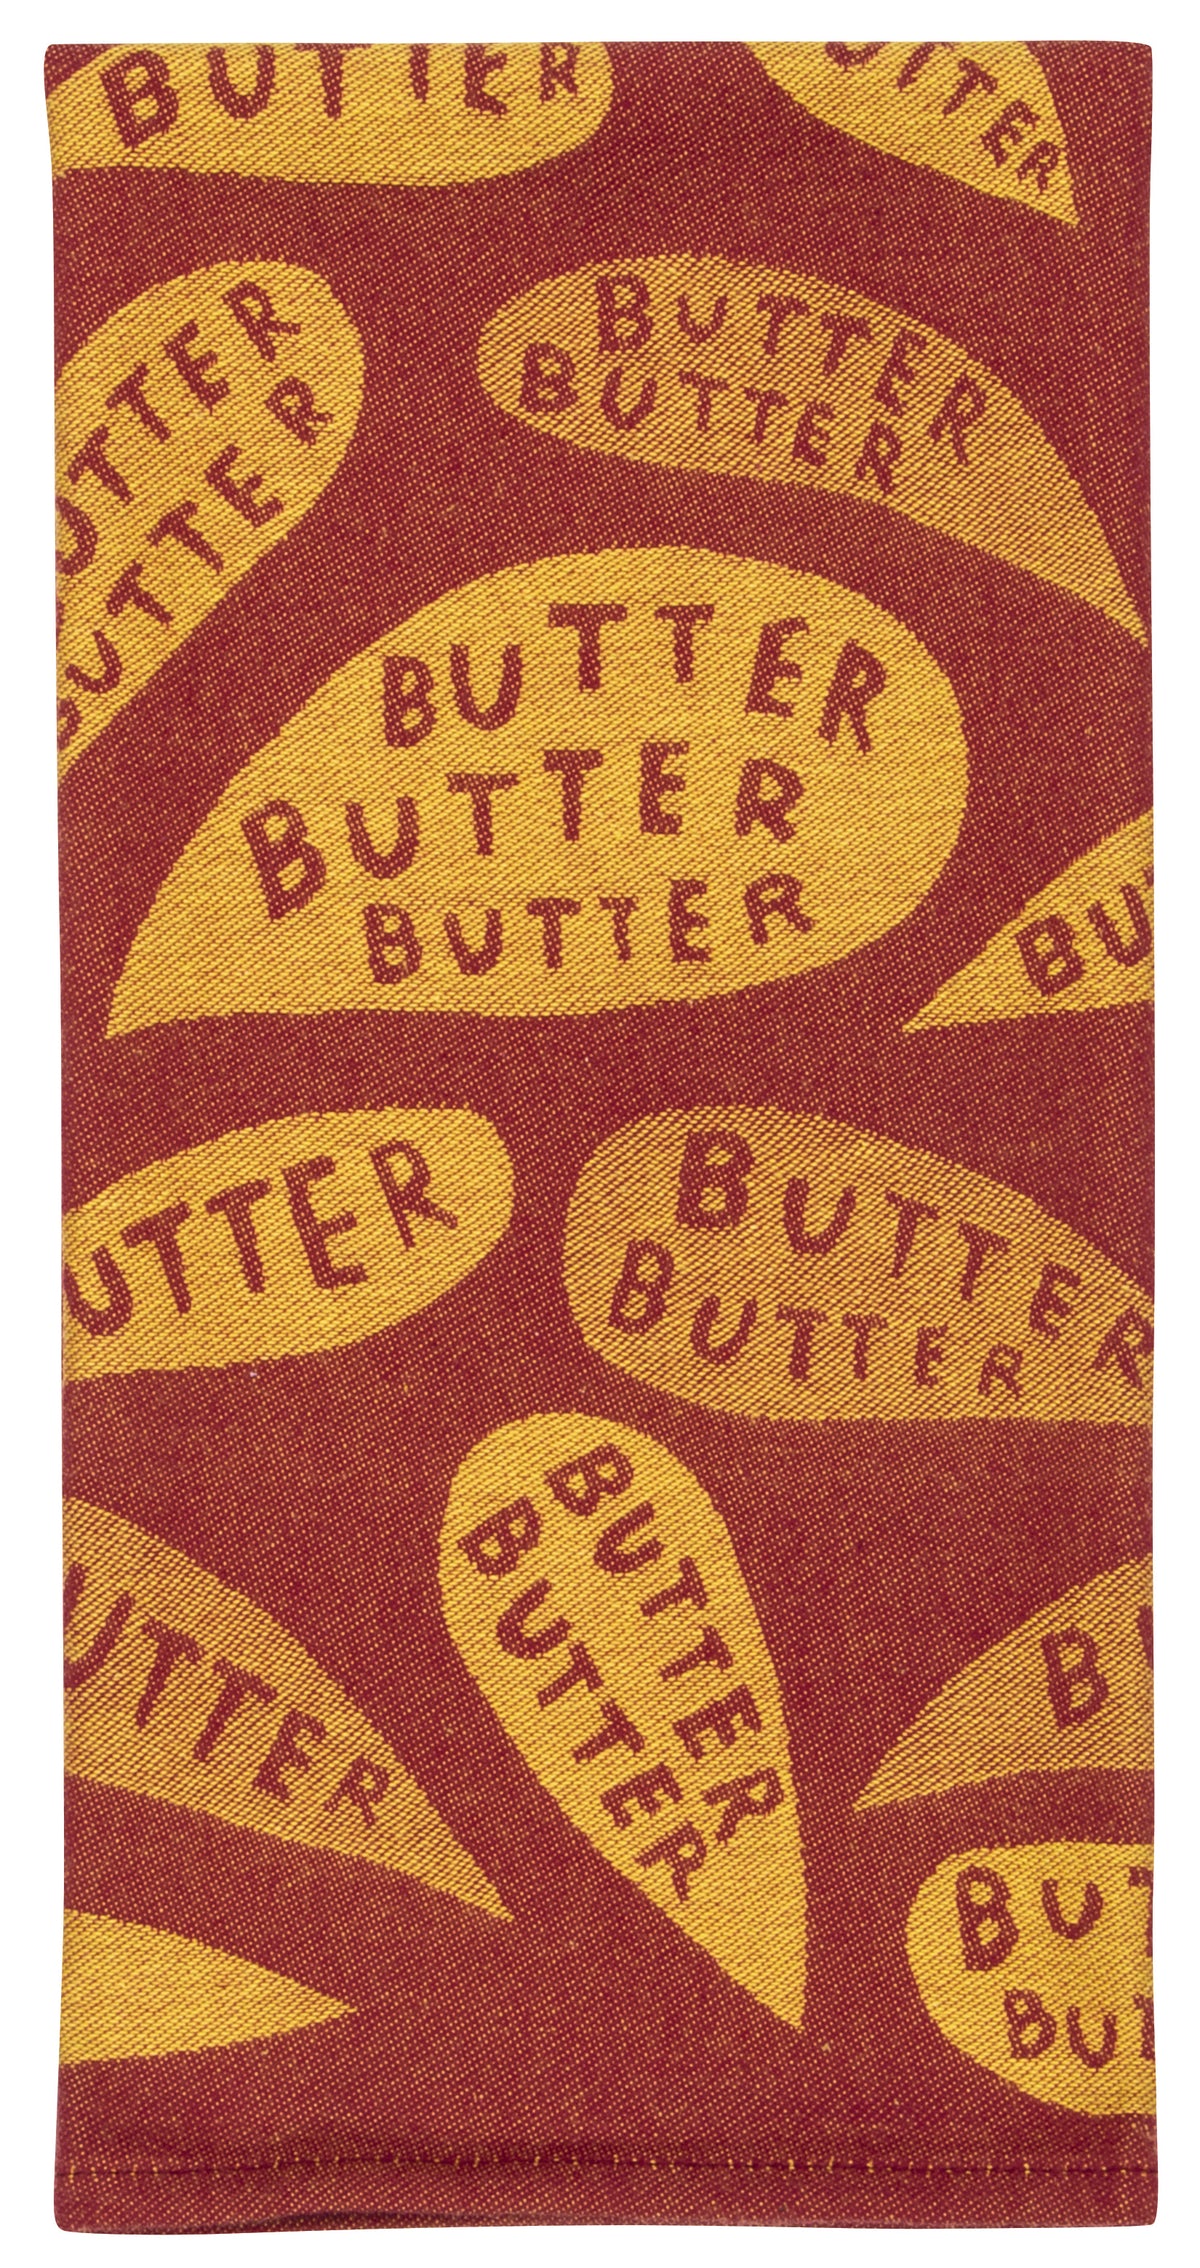 Butter Butter Butter Tea Towel / Dish Towel